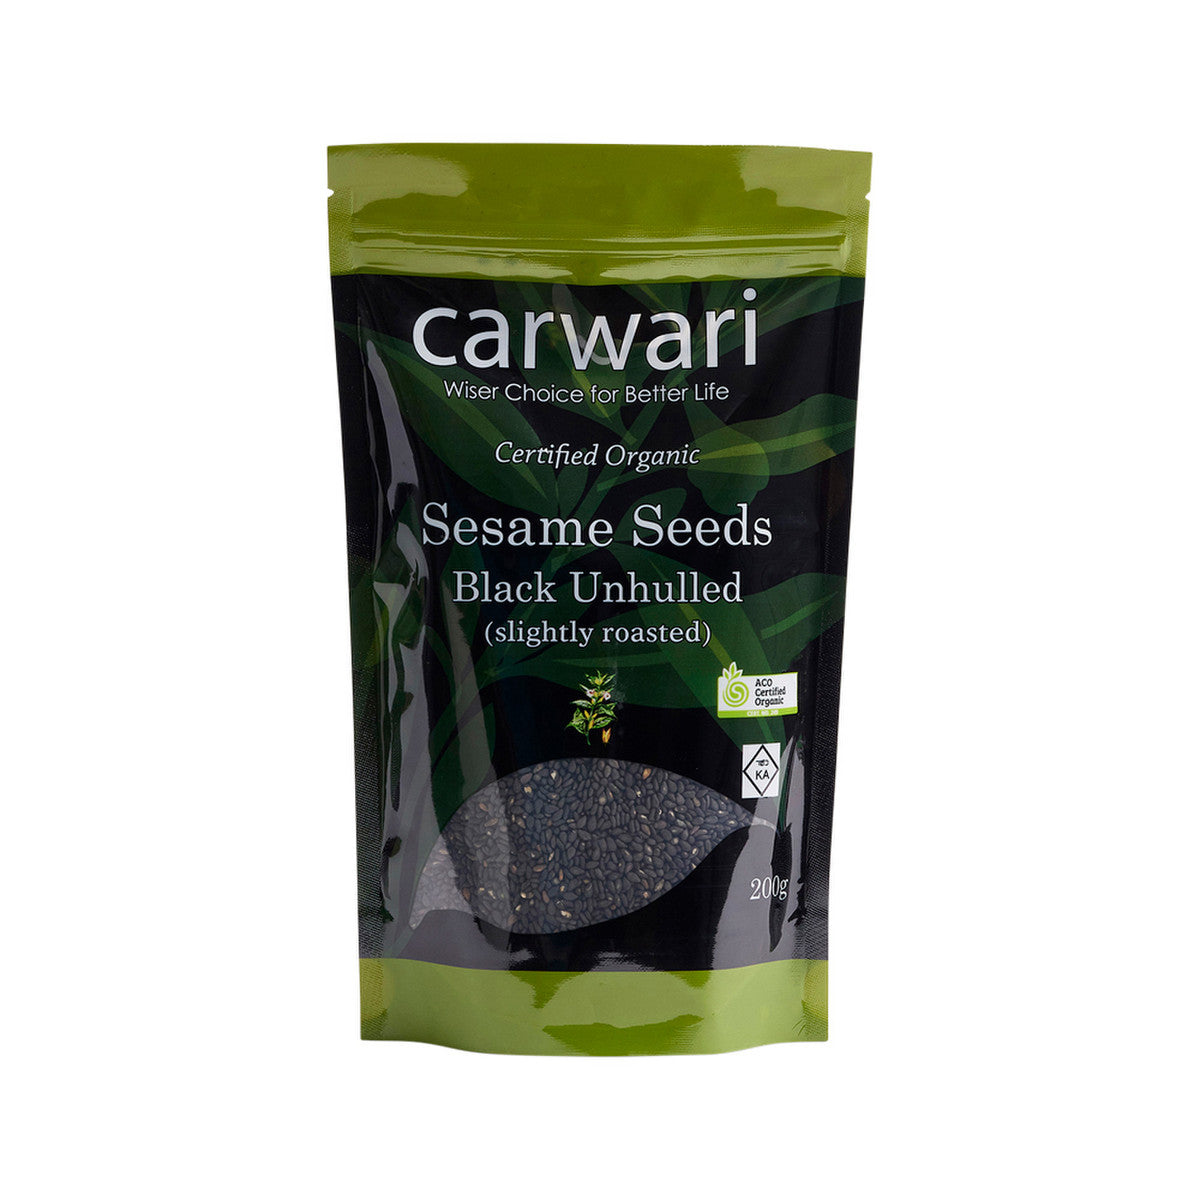 Carwari - Organic Sesame Seeds Black Unhulled